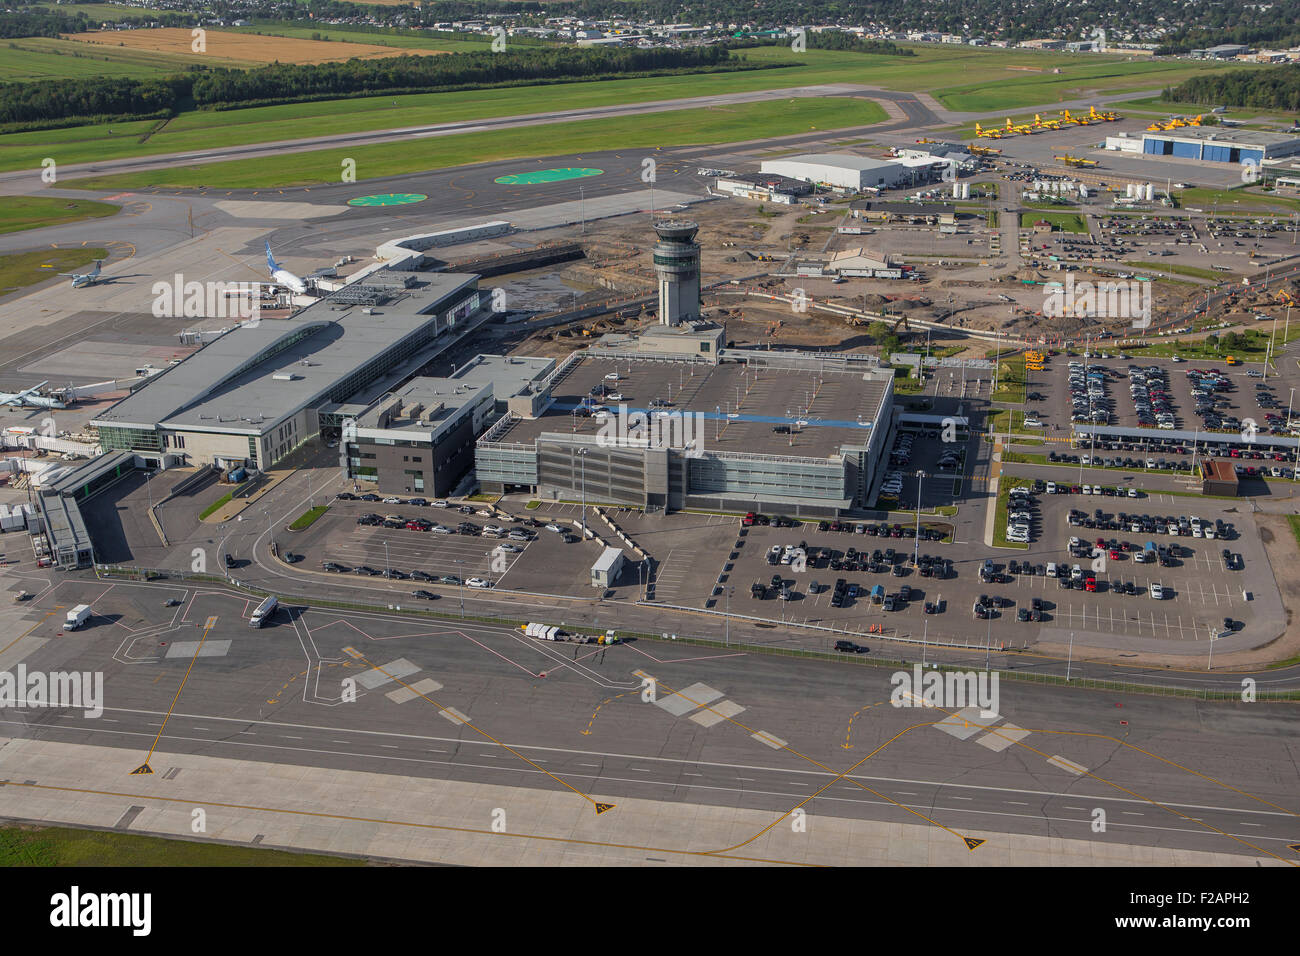 La ville de Québec l'Aéroport International Jean Lesage est représentée  dans cette vue aérienne de la ville de Québec Photo Stock - Alamy